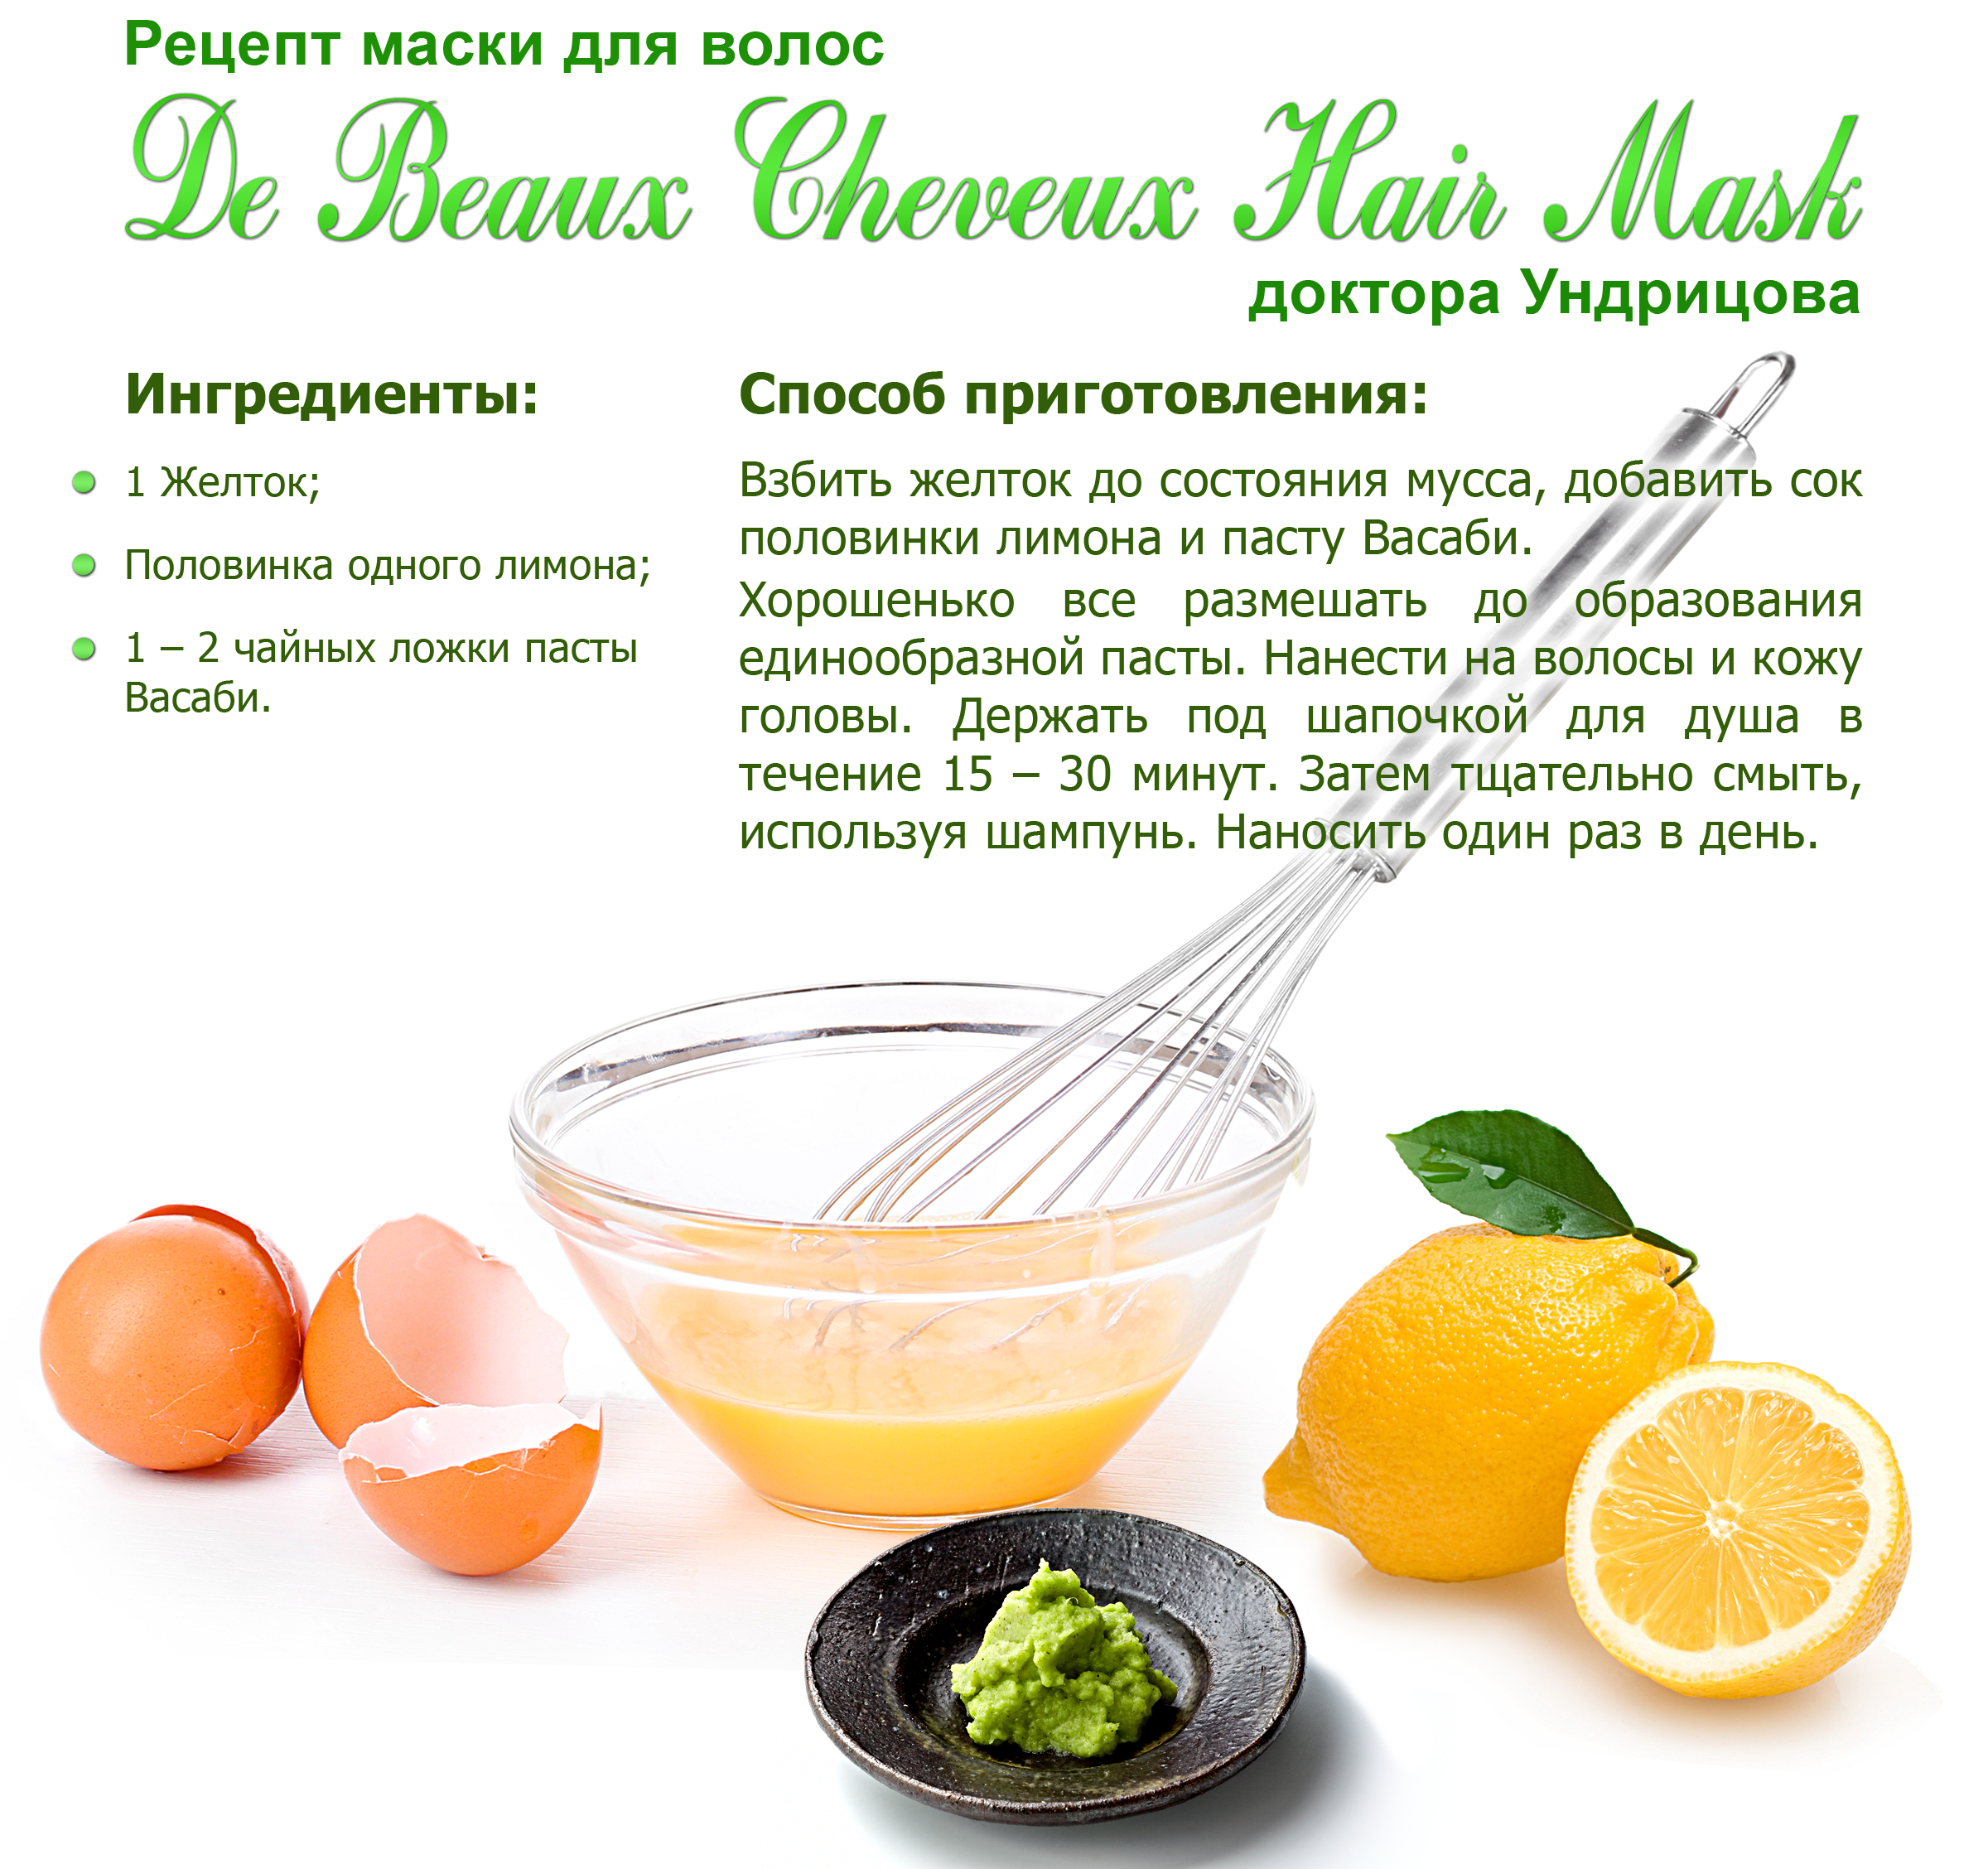 8 рецептов масок для волос с репейным маслом - glamusha